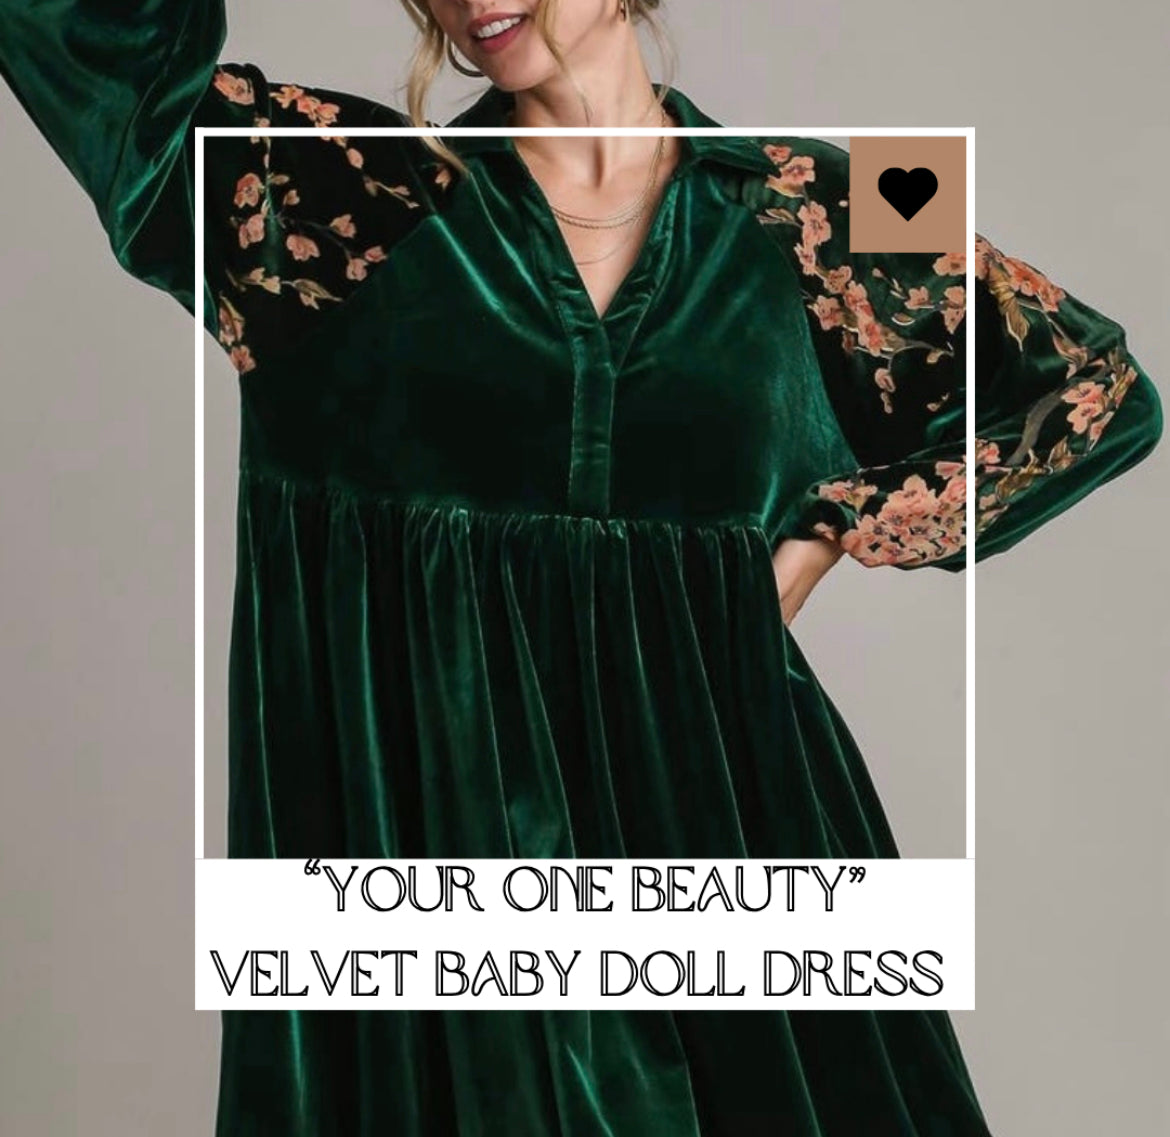 "Your One Beauty" velvet baby doll dress